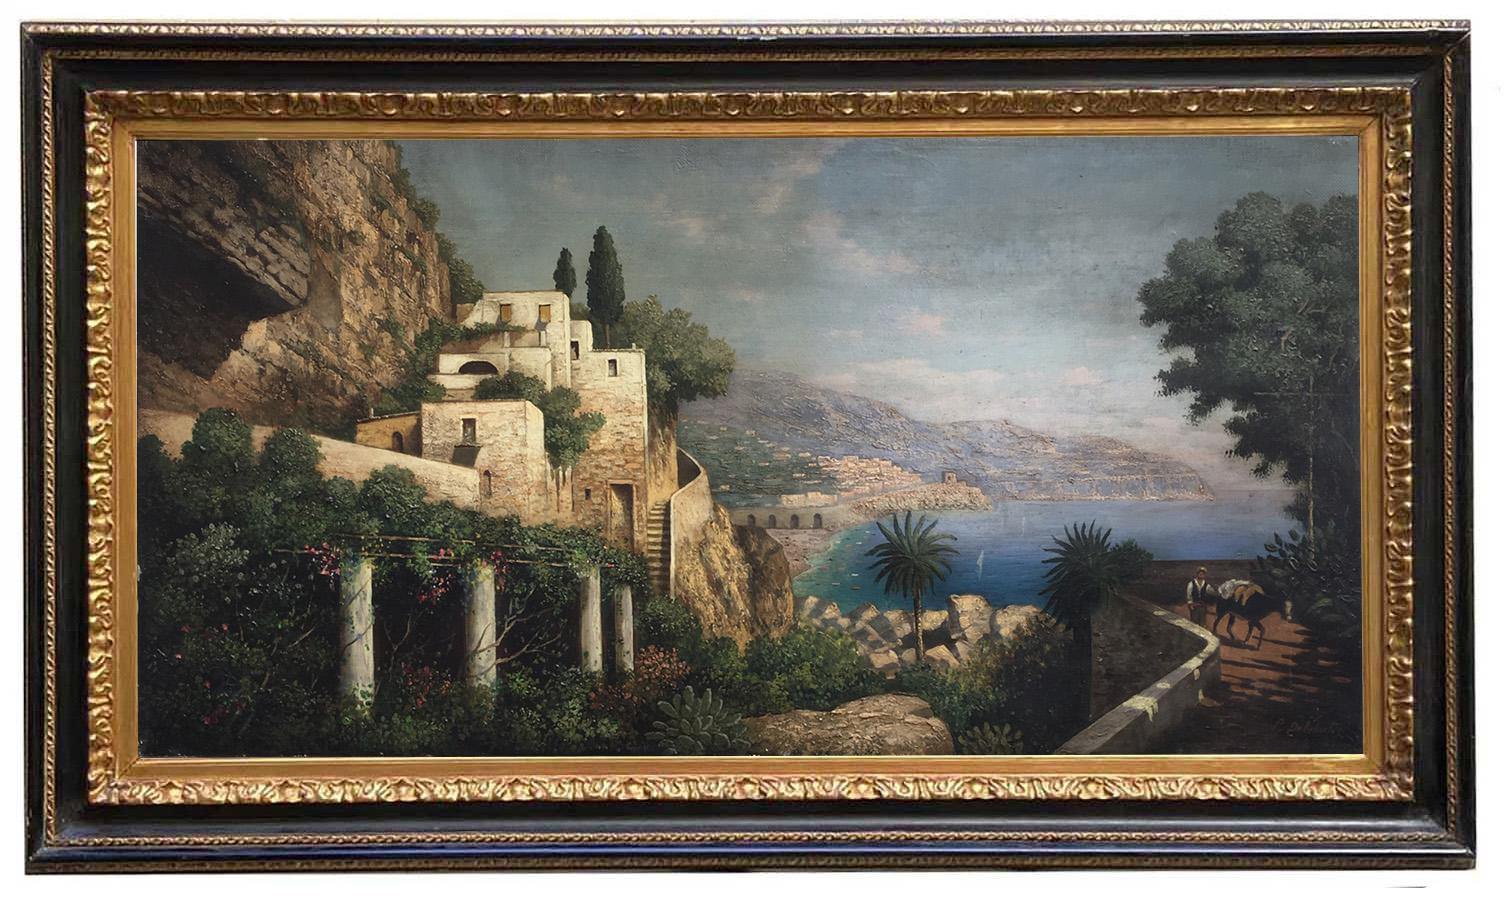 école COAST- Posillipo - Peinture de paysage italien à l'huile sur toile